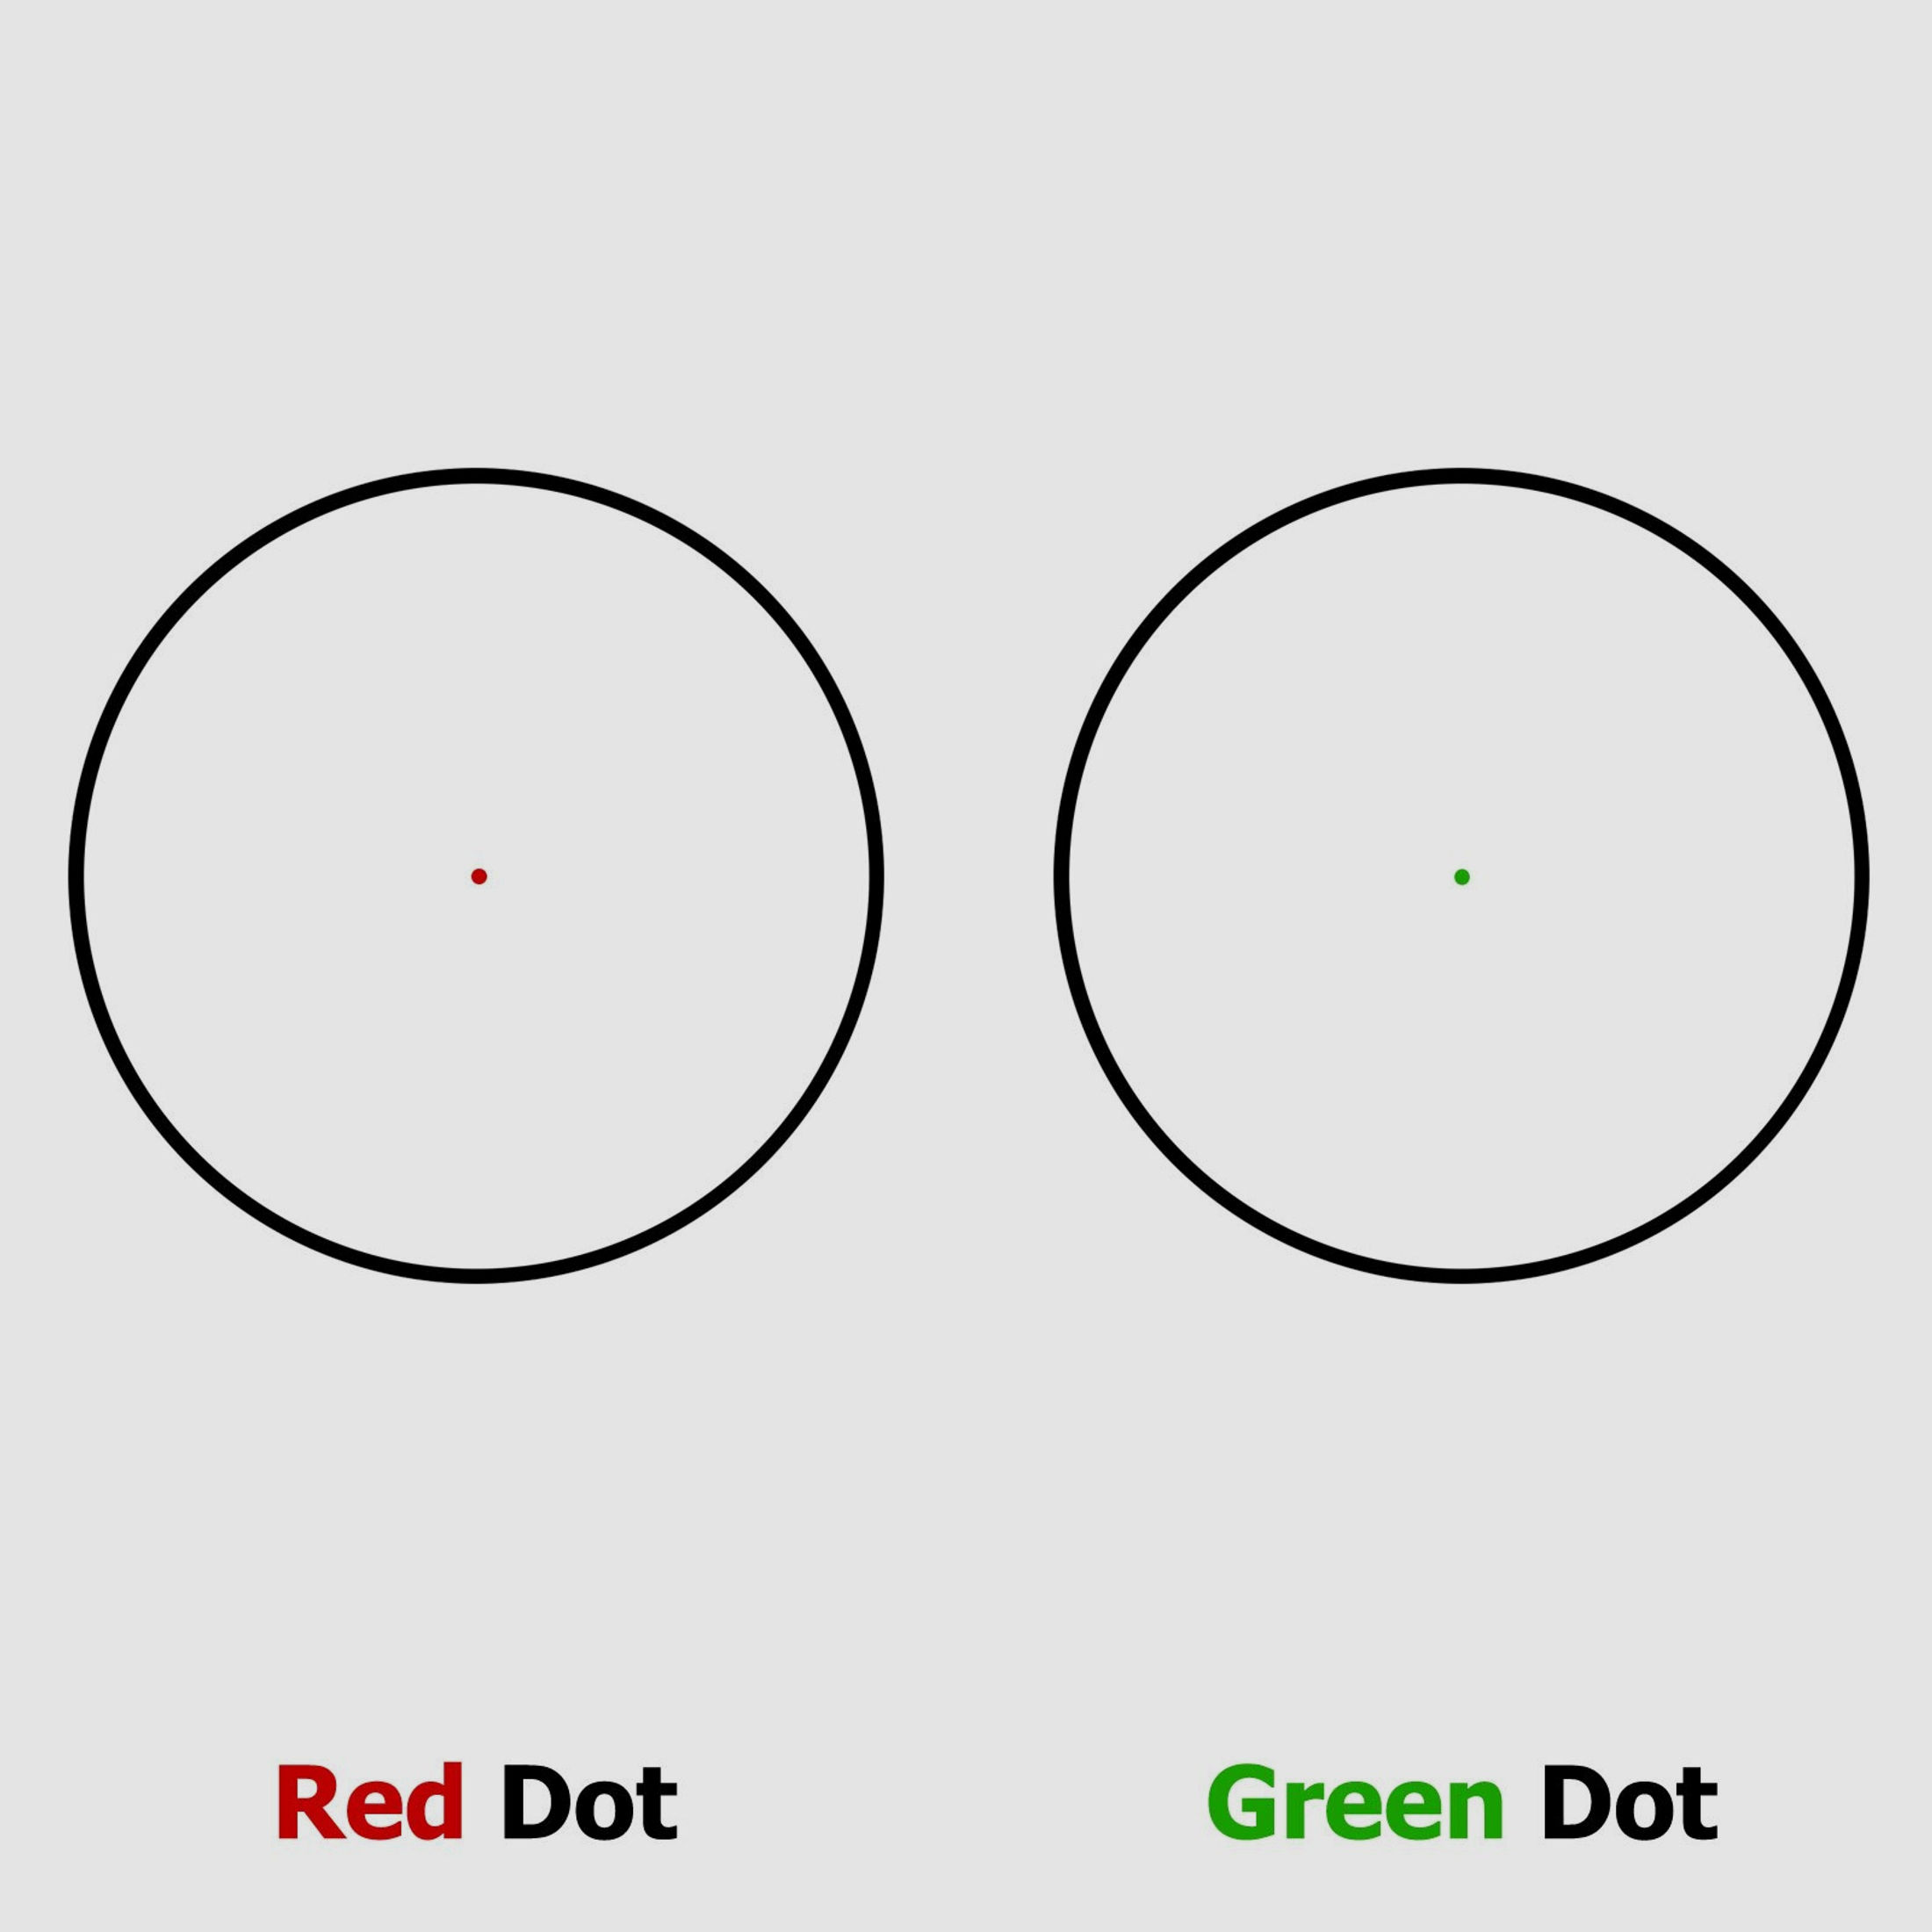 4komma5 M3 1x30 Red Dot / Leuchtpunktvisier mit Weaver-Montage